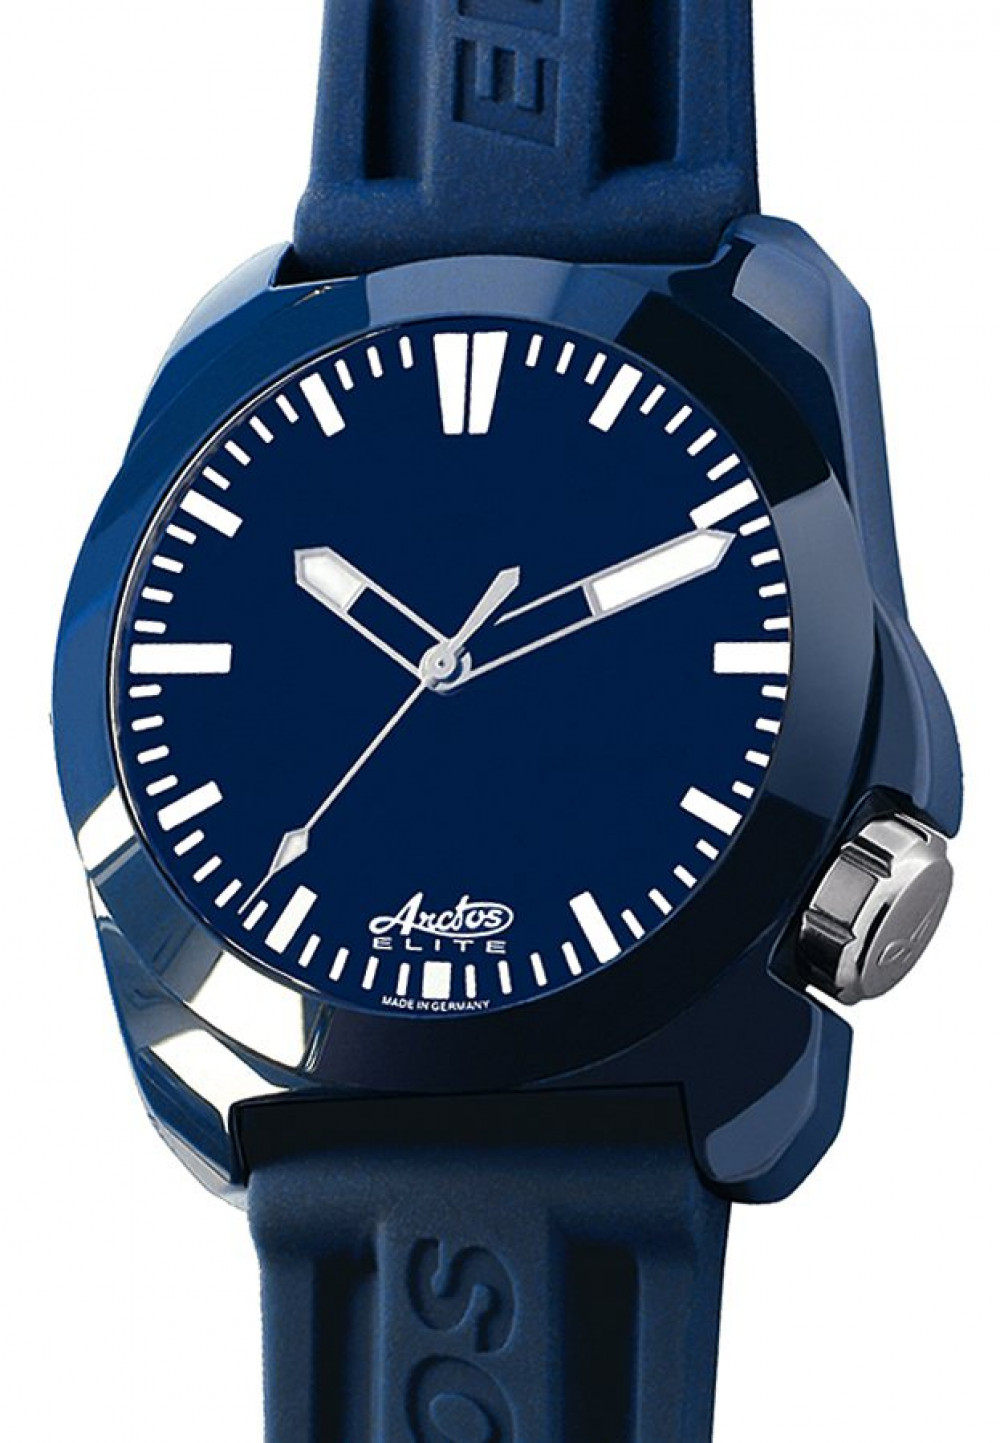 Zegarek firmy Arctos, model GPW L1 Ocean